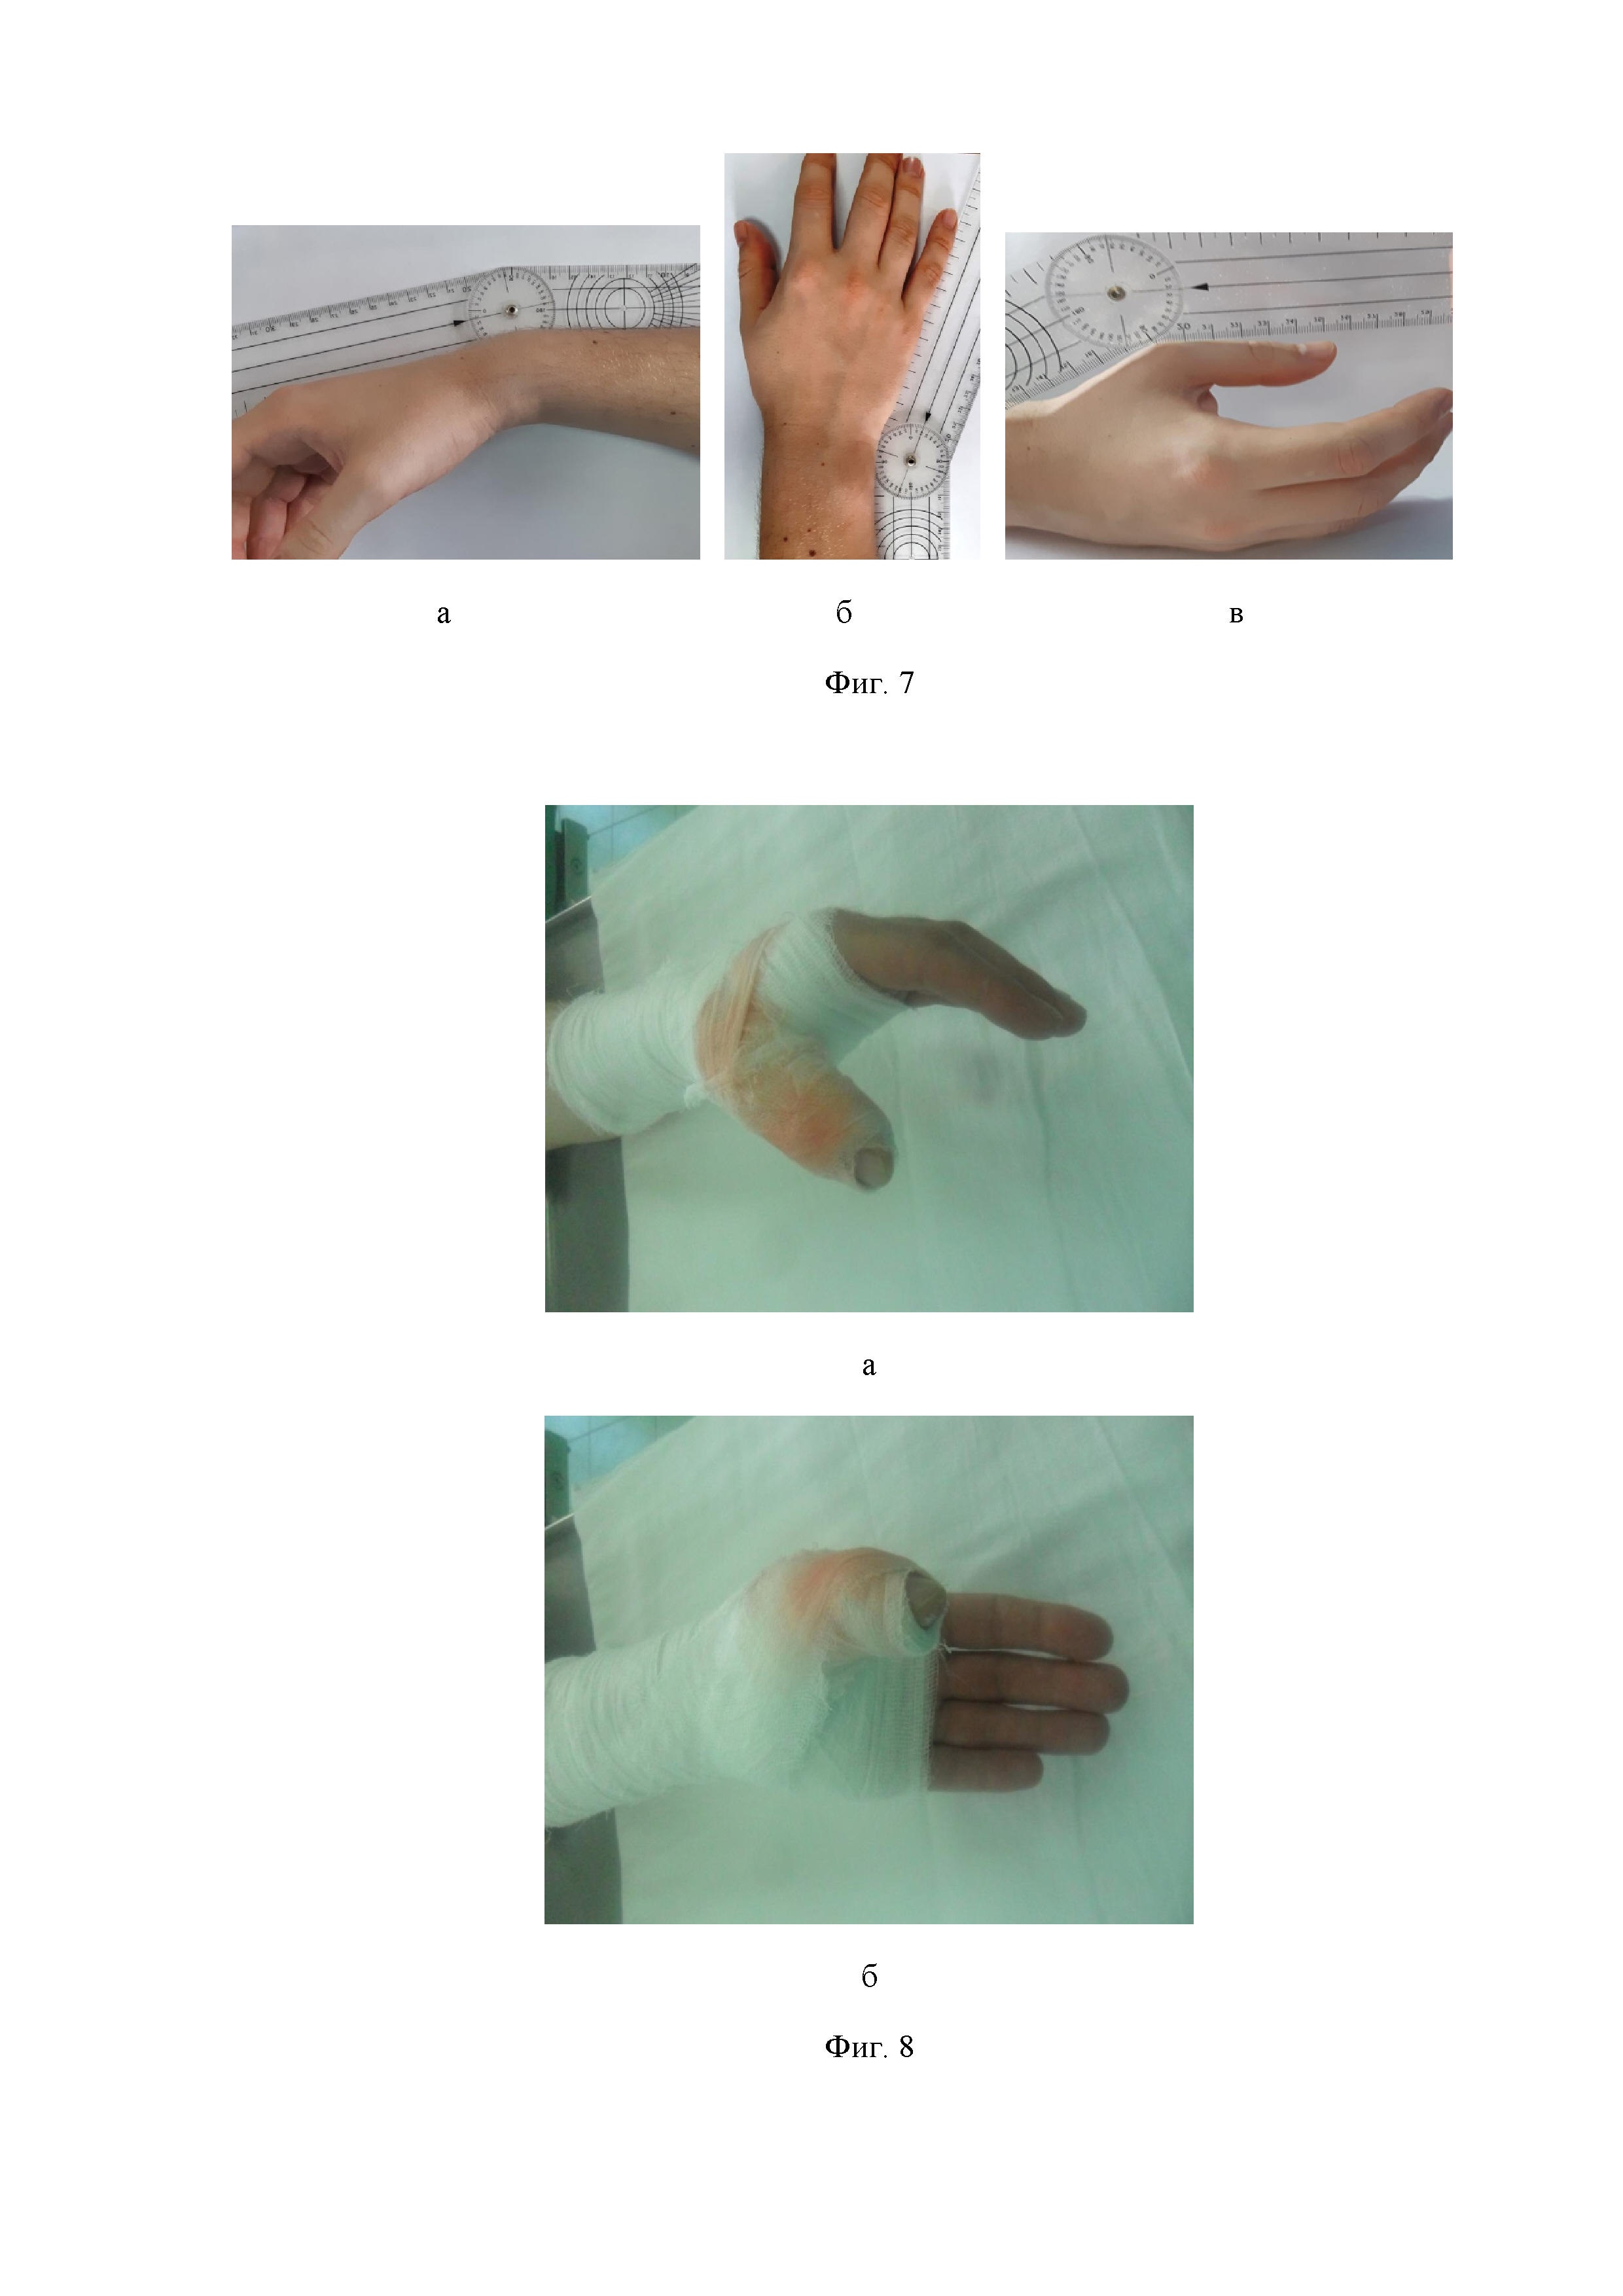 Способ восстановления сухожилий разгибателей пальцев кисти на уровне дистального межфалангового сустава (варианты)